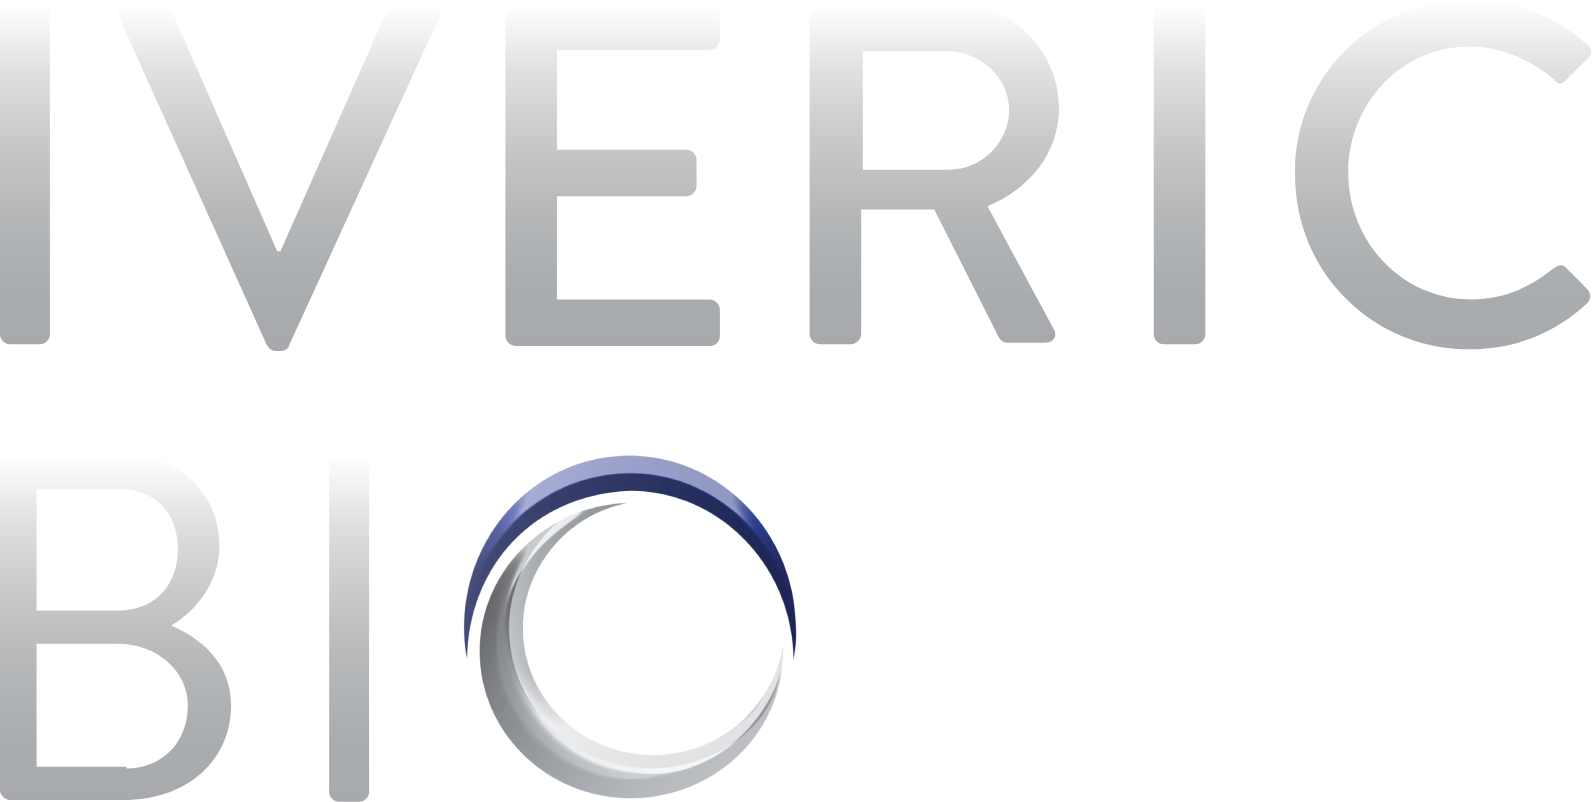 IVERIC bio logo large for dark backgrounds (transparent PNG)